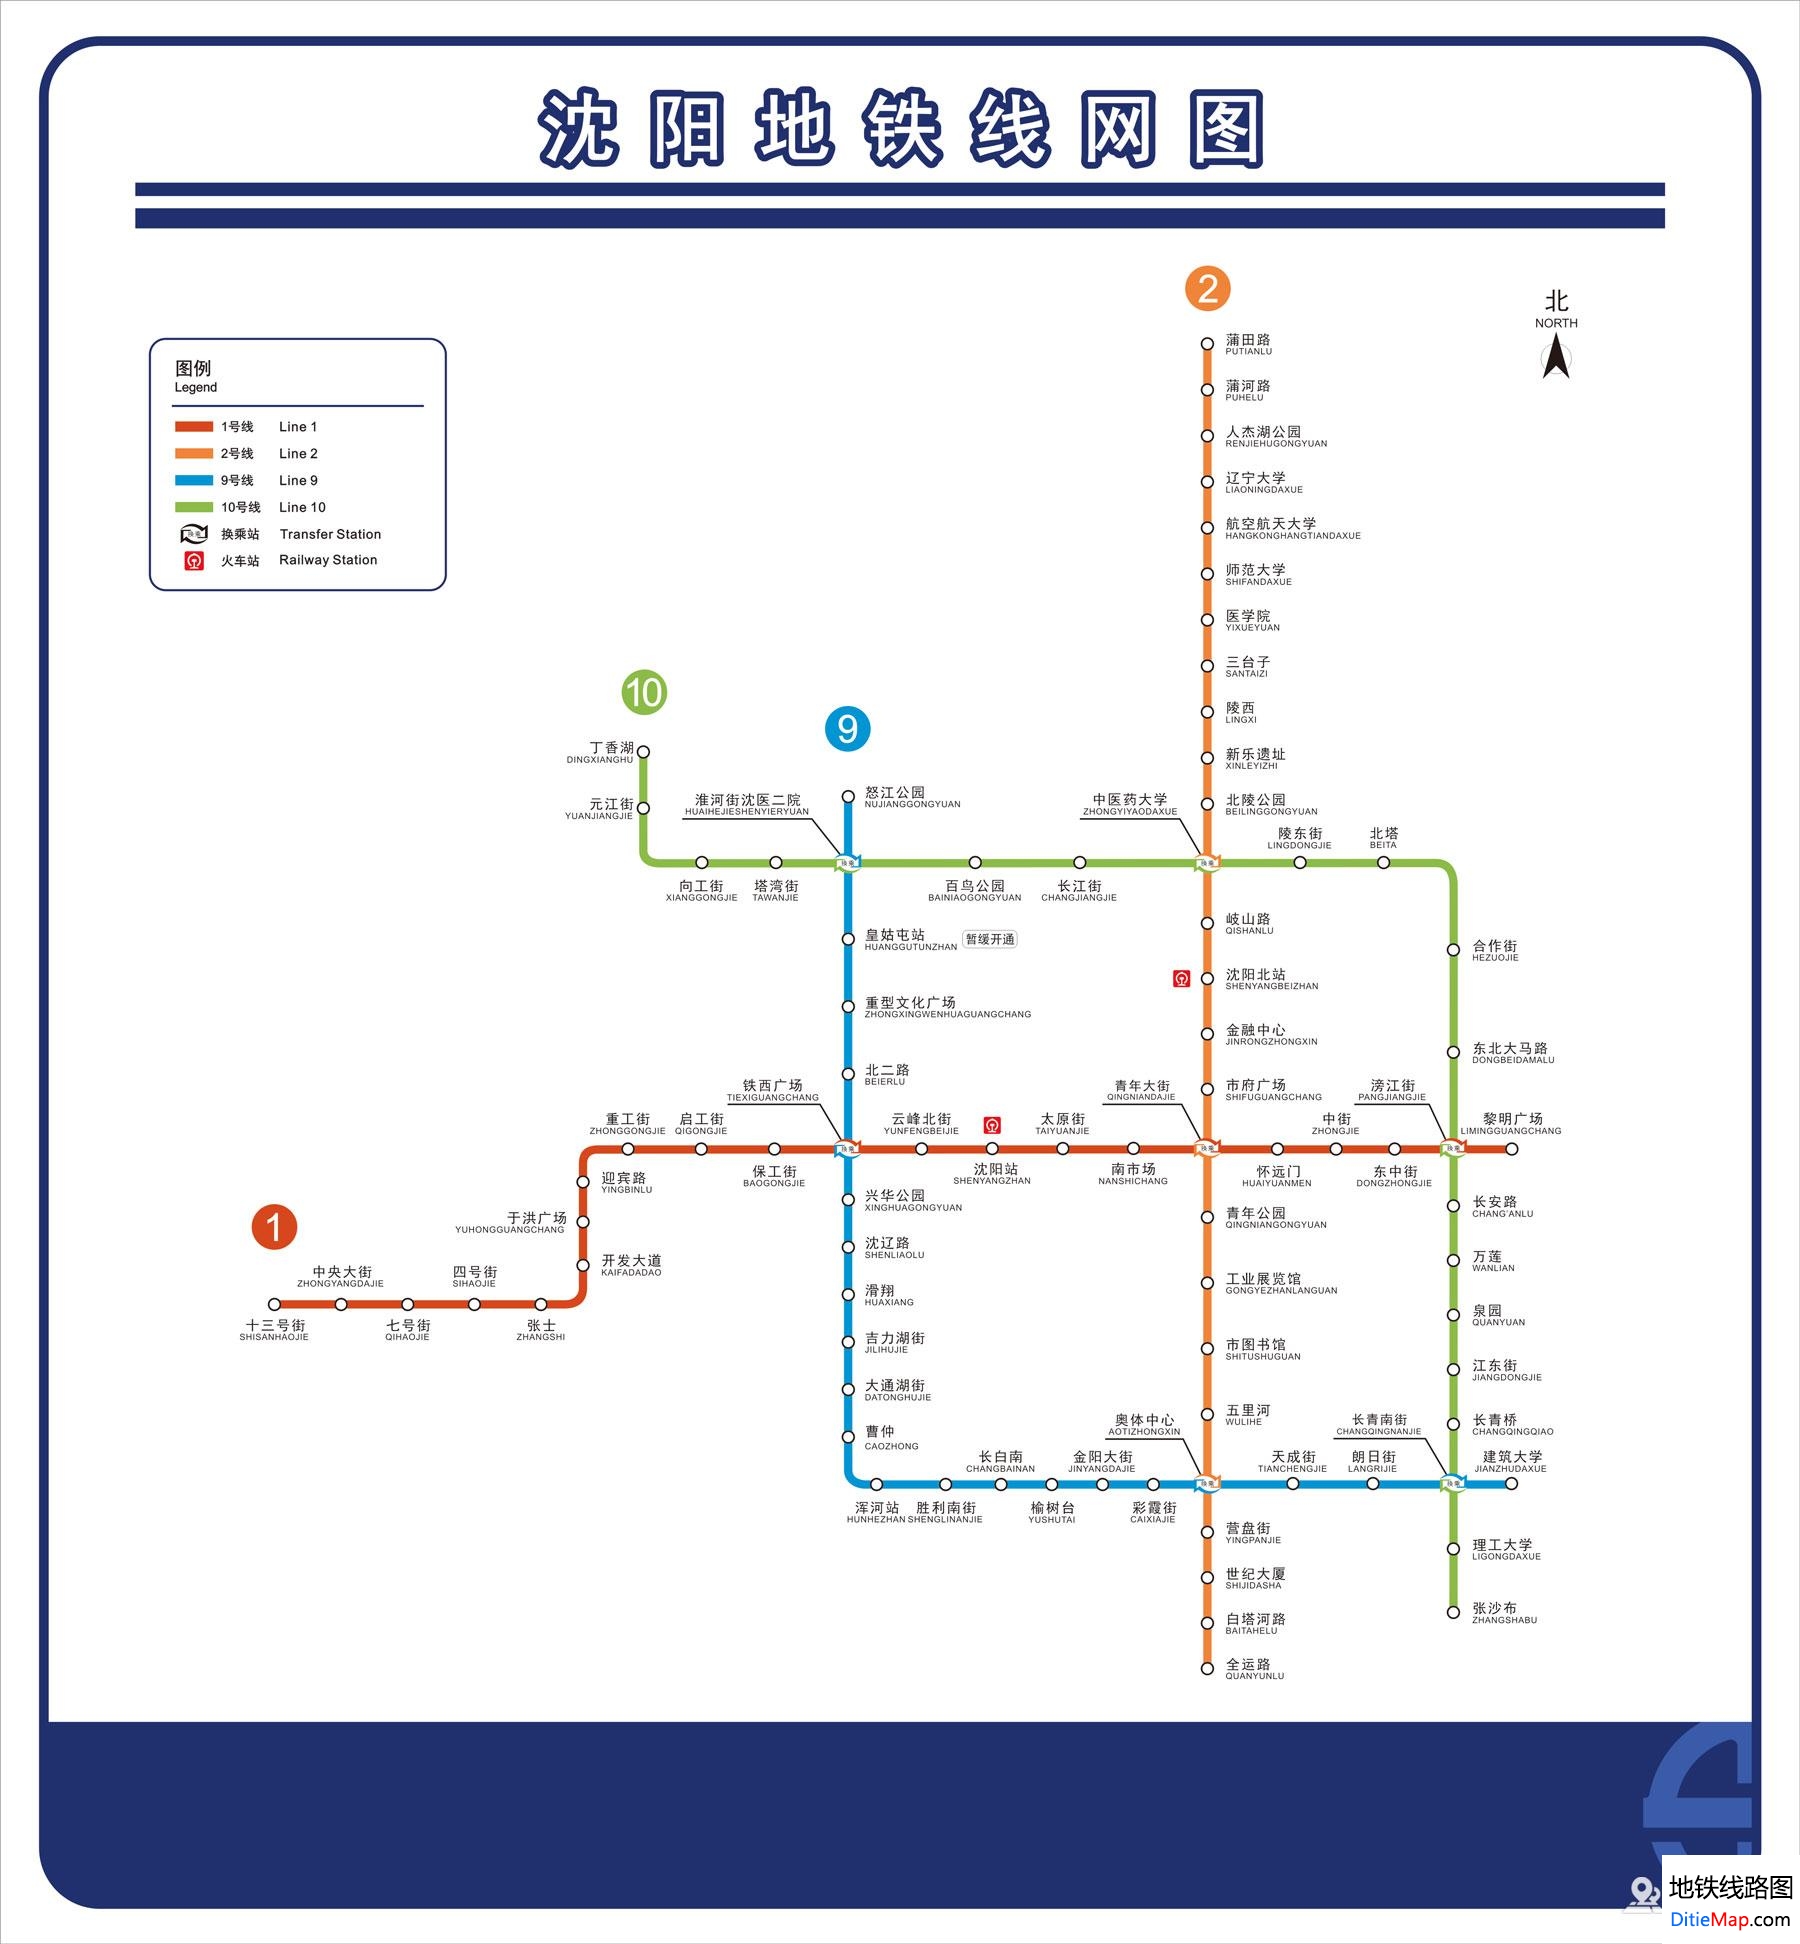 沈阳地铁线路图 运营时间票价站点 查询下载 沈阳地铁线路图 沈阳地铁